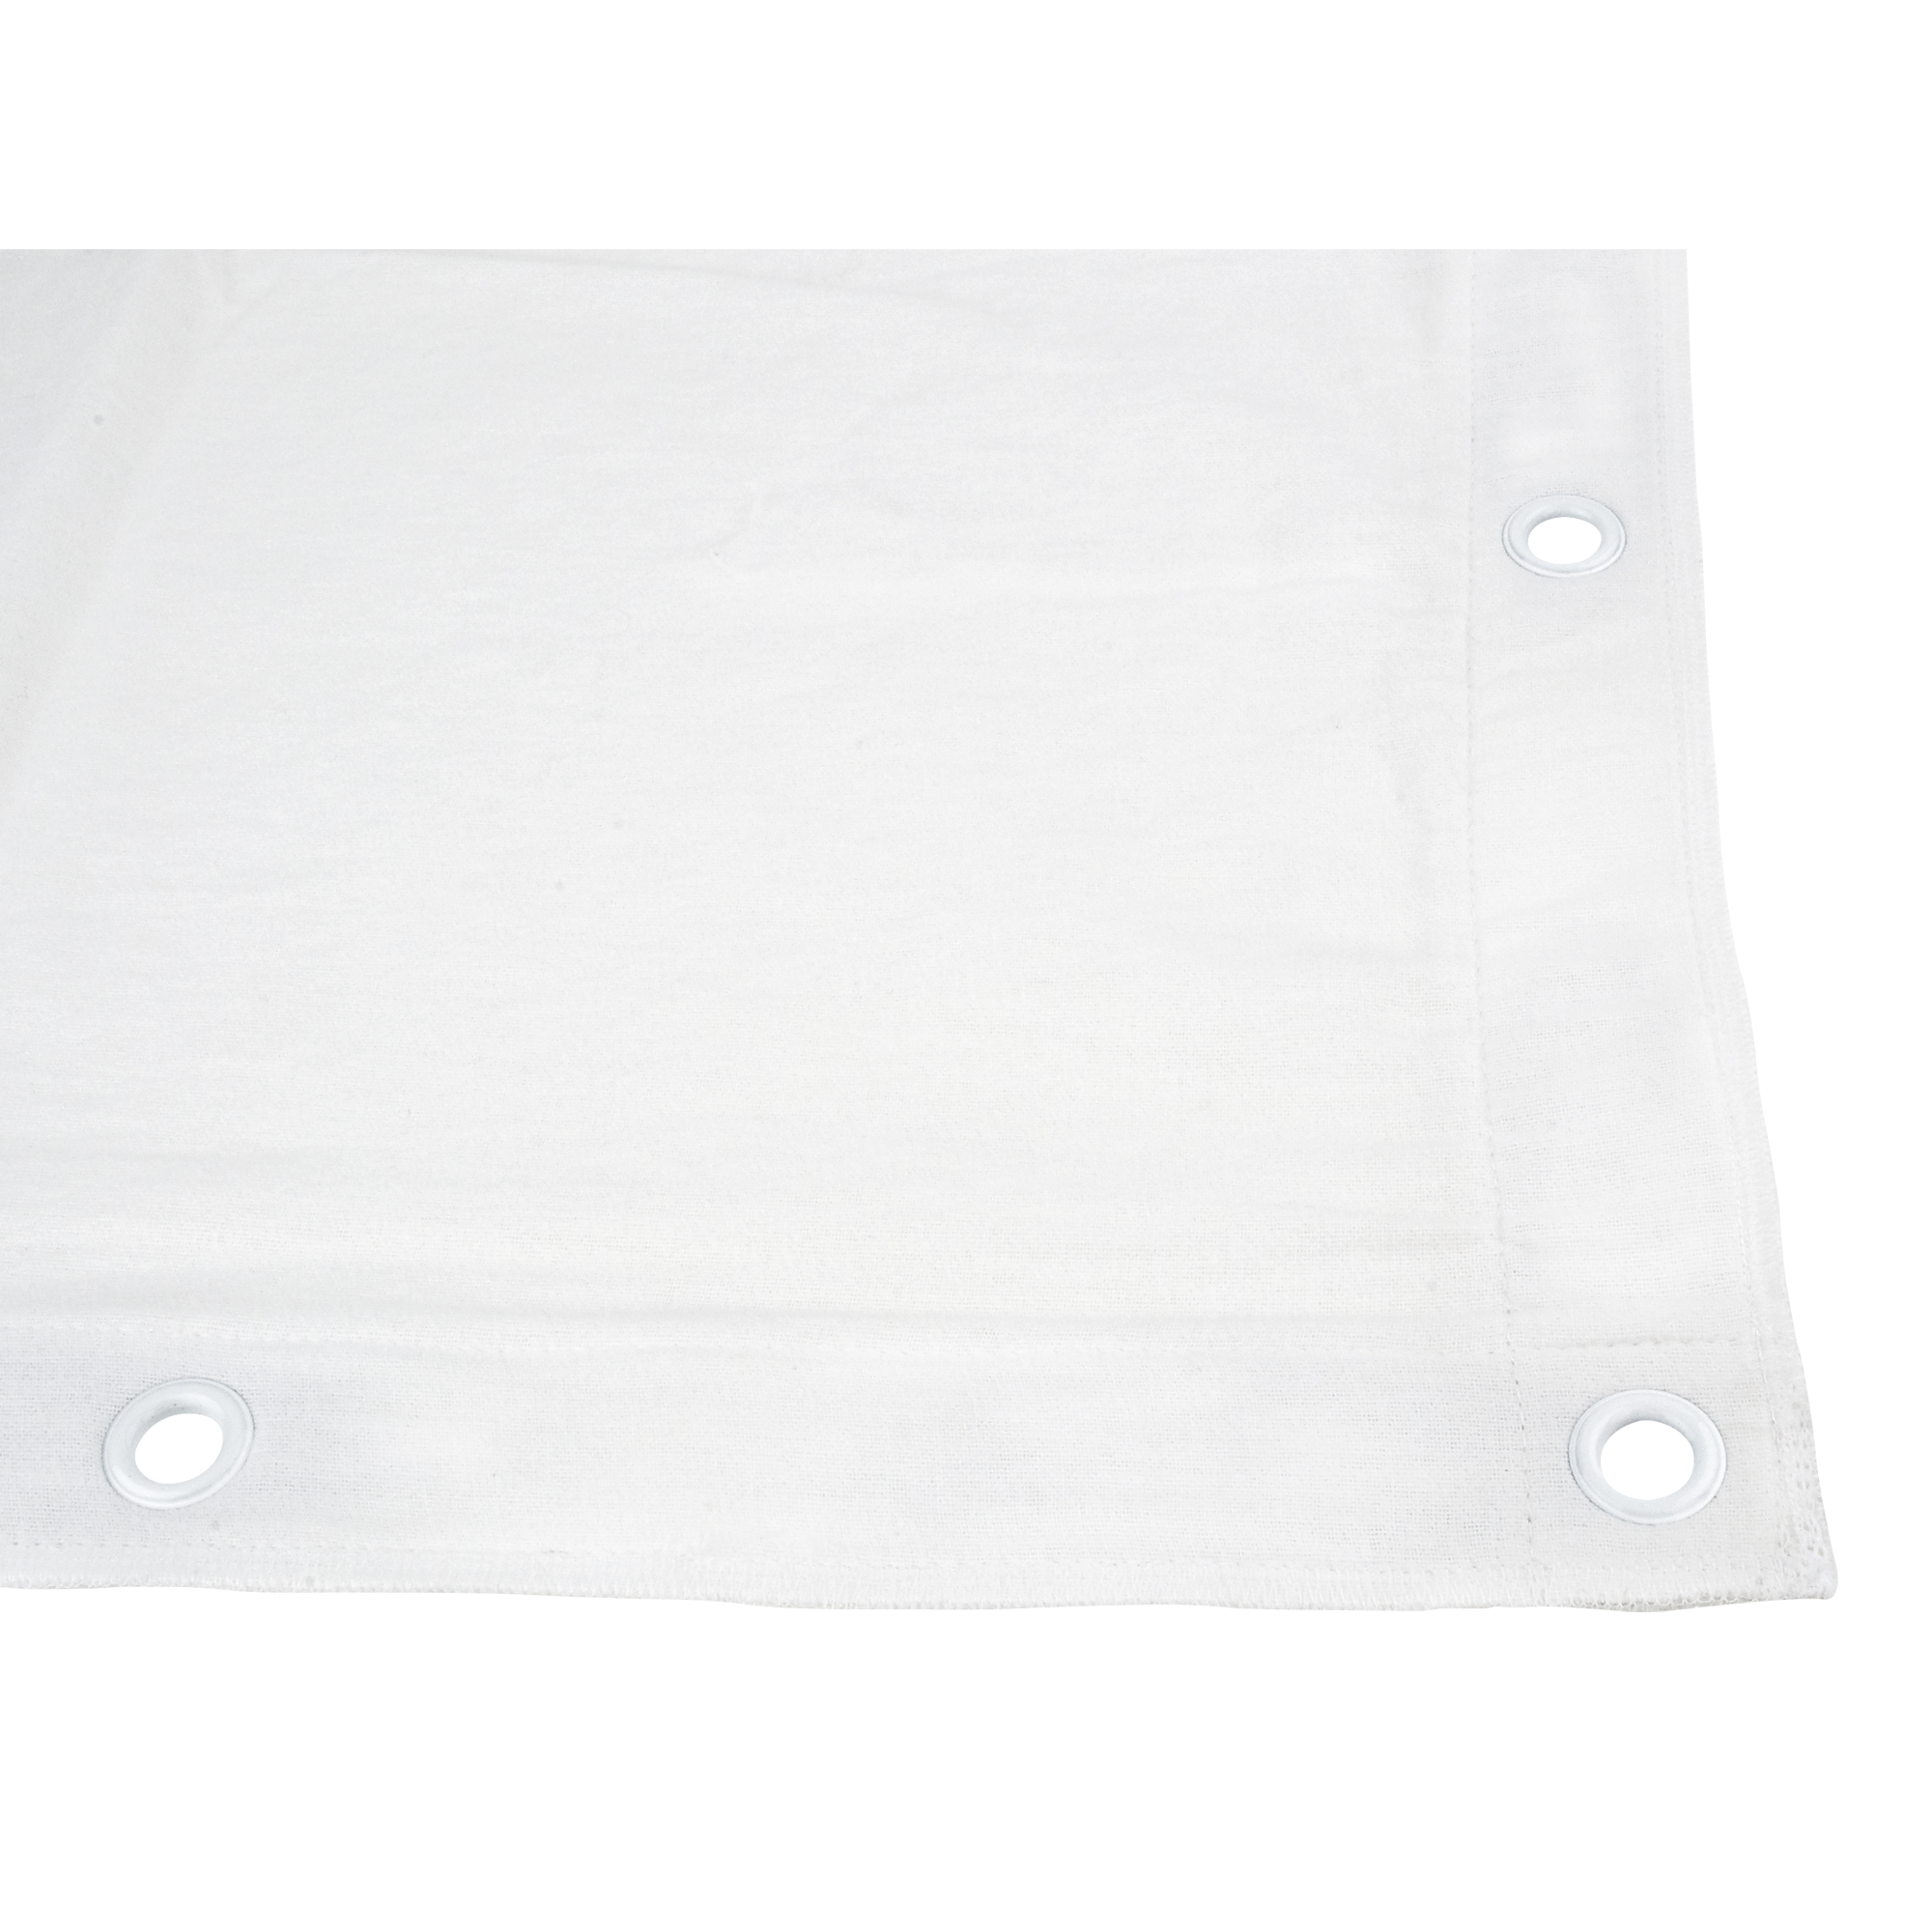 Showgear Square Cloth Dekomolton 160 g/m² Weiß - 140 (B) x 140 (H) cm - 24 Bindungsgummis